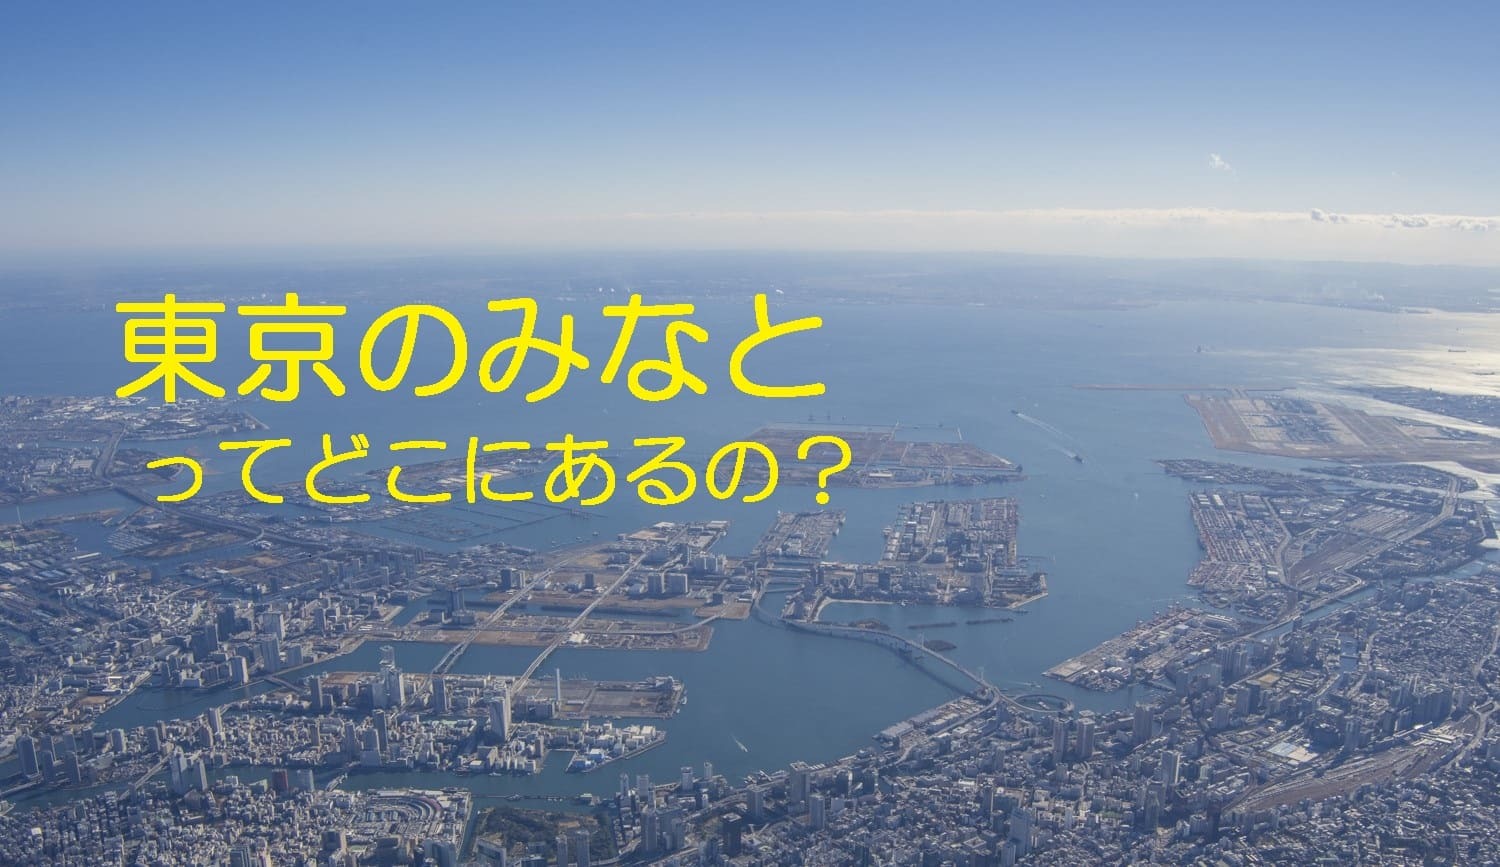 座学<br />
〇業界団体である東京港運協会による東京港の概要説明<br />
〇東京には、日本一の外国貿易貨物量を誇る東京港がありますが、横浜港や神戸港のように知られておらず、マスコミの報道も東京湾になってしまいます。そこで、改めて東京港の概要を紹介します。<br />
（場所:東京港運協会会議室）